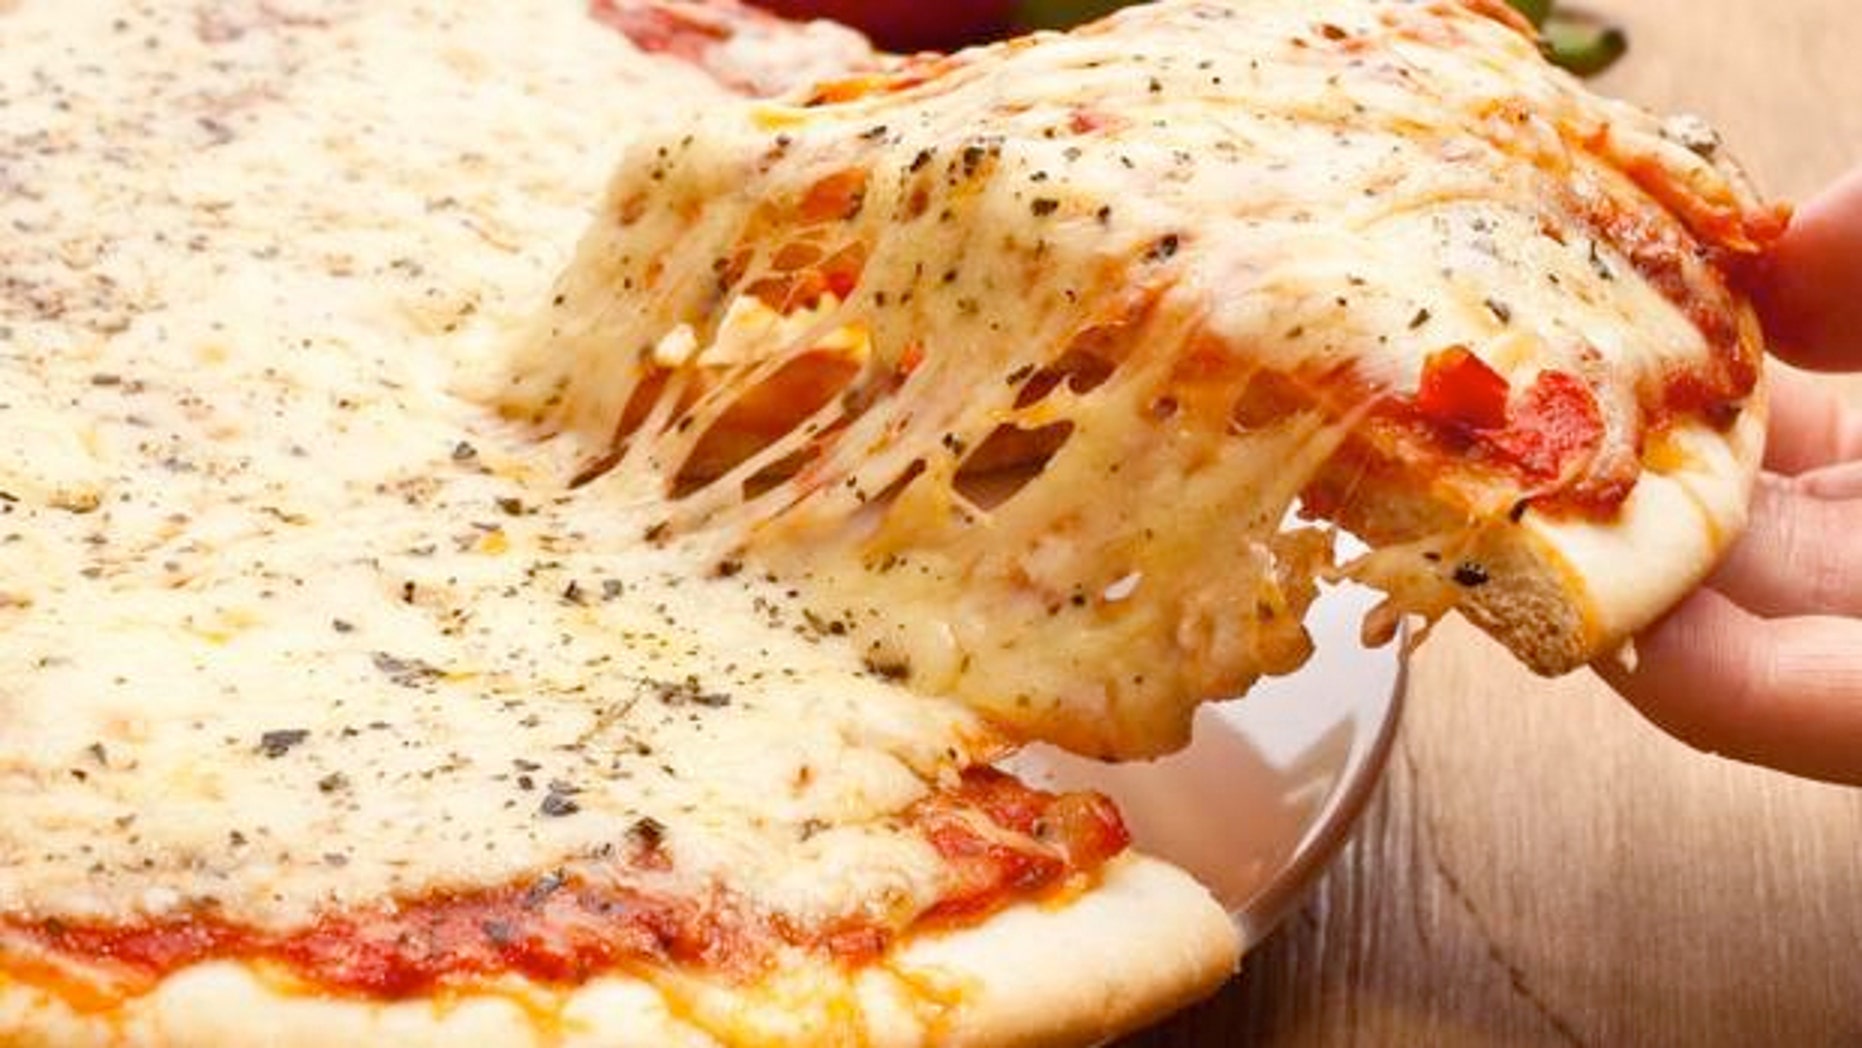 Mozzarella best cheese for pizza, according to scientific study Fox News